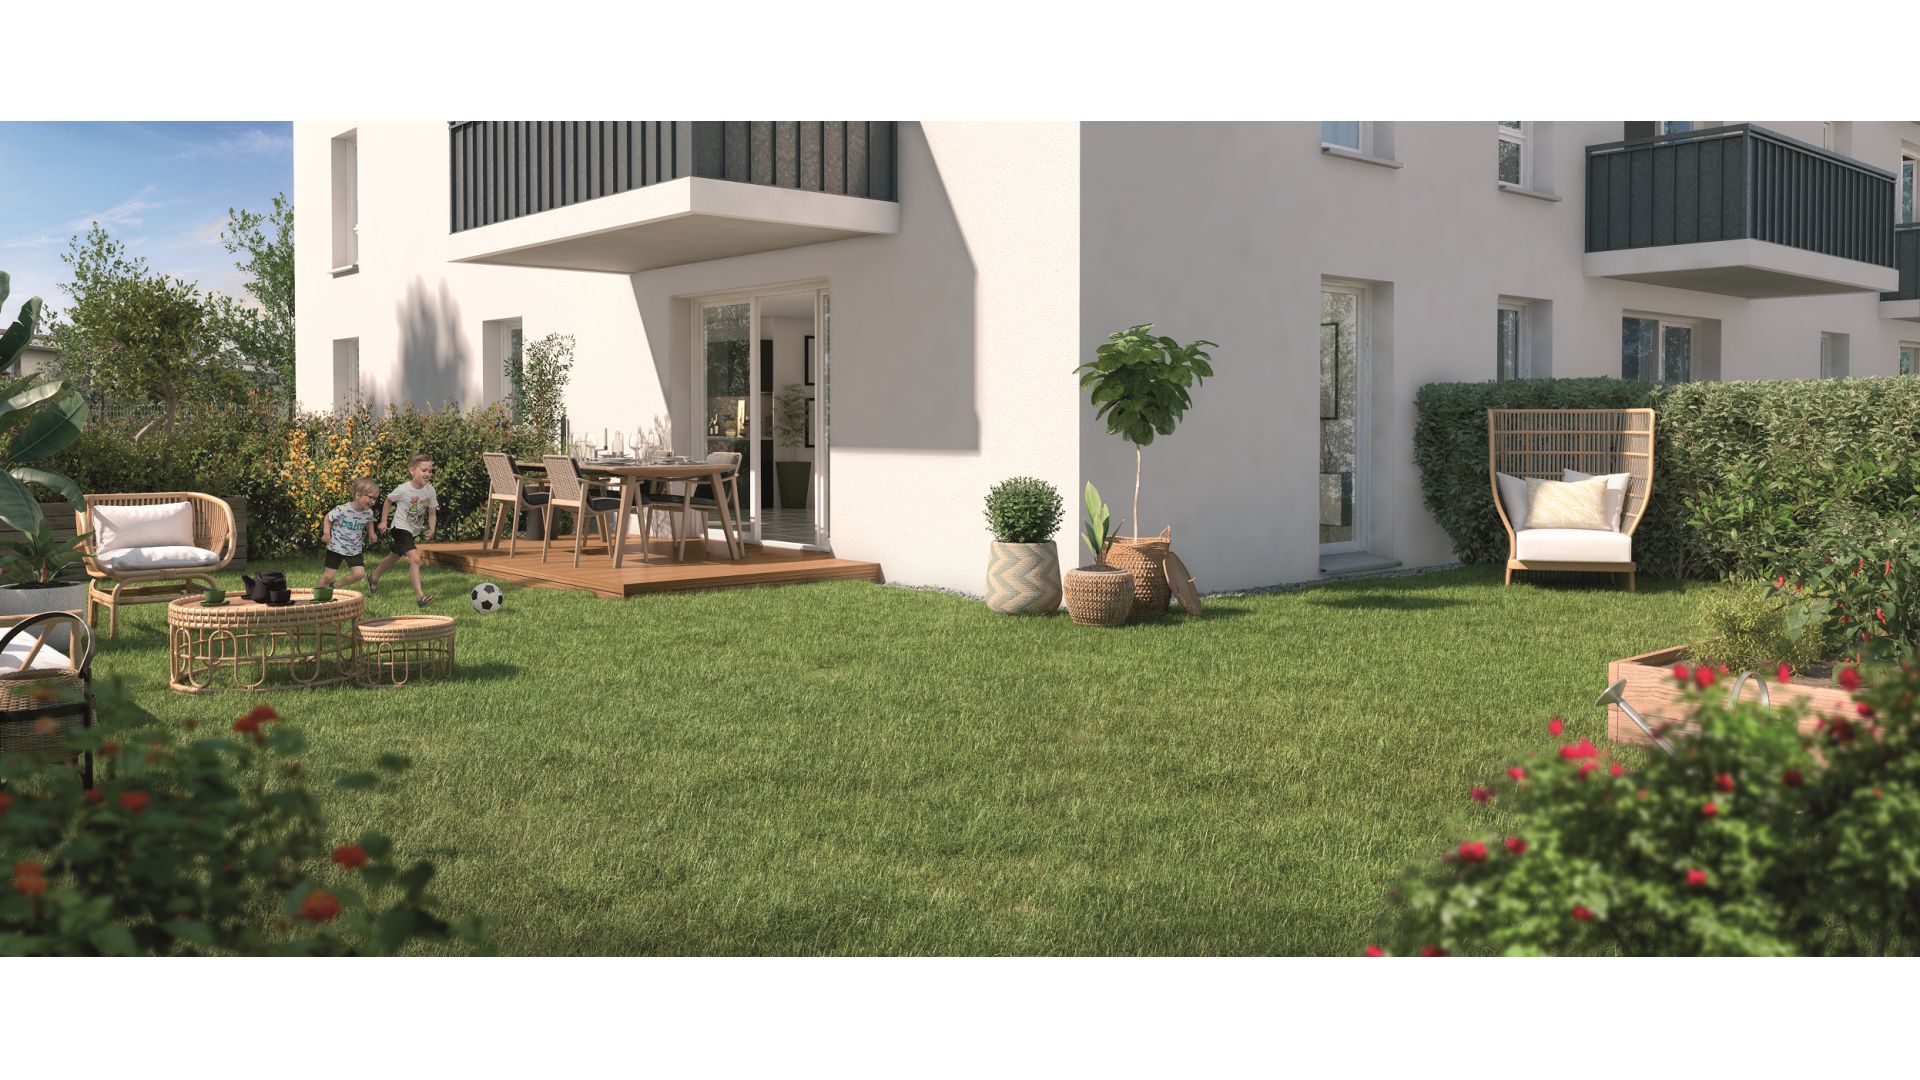 Greencity immobilier - achat appartements neufs du T2 au T4- Résidence Le Lorenzo - 31200 Toulouse Croix-Daurade - vue terrasse